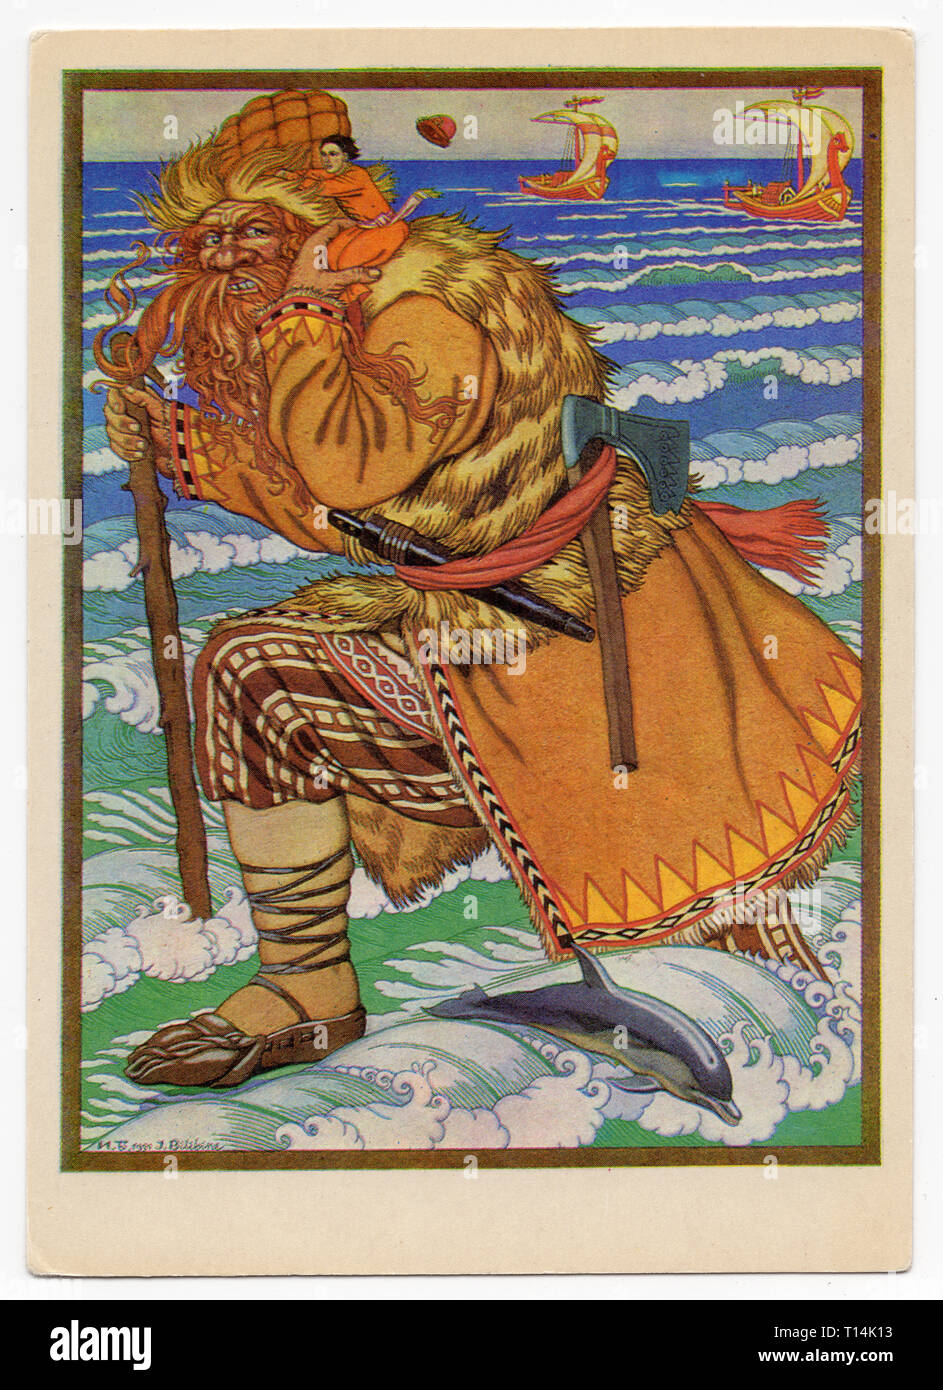 Cojinete gigante Ivan sobre el mar representado en el color de la ilustración para el cuento popular ruso "alt" por el artista ruso Ivan Bilibin (1931) impreso en el Soviet vintage postal emitido después de 1942. Cortesía de la colección de postales Azoor. Foto de stock